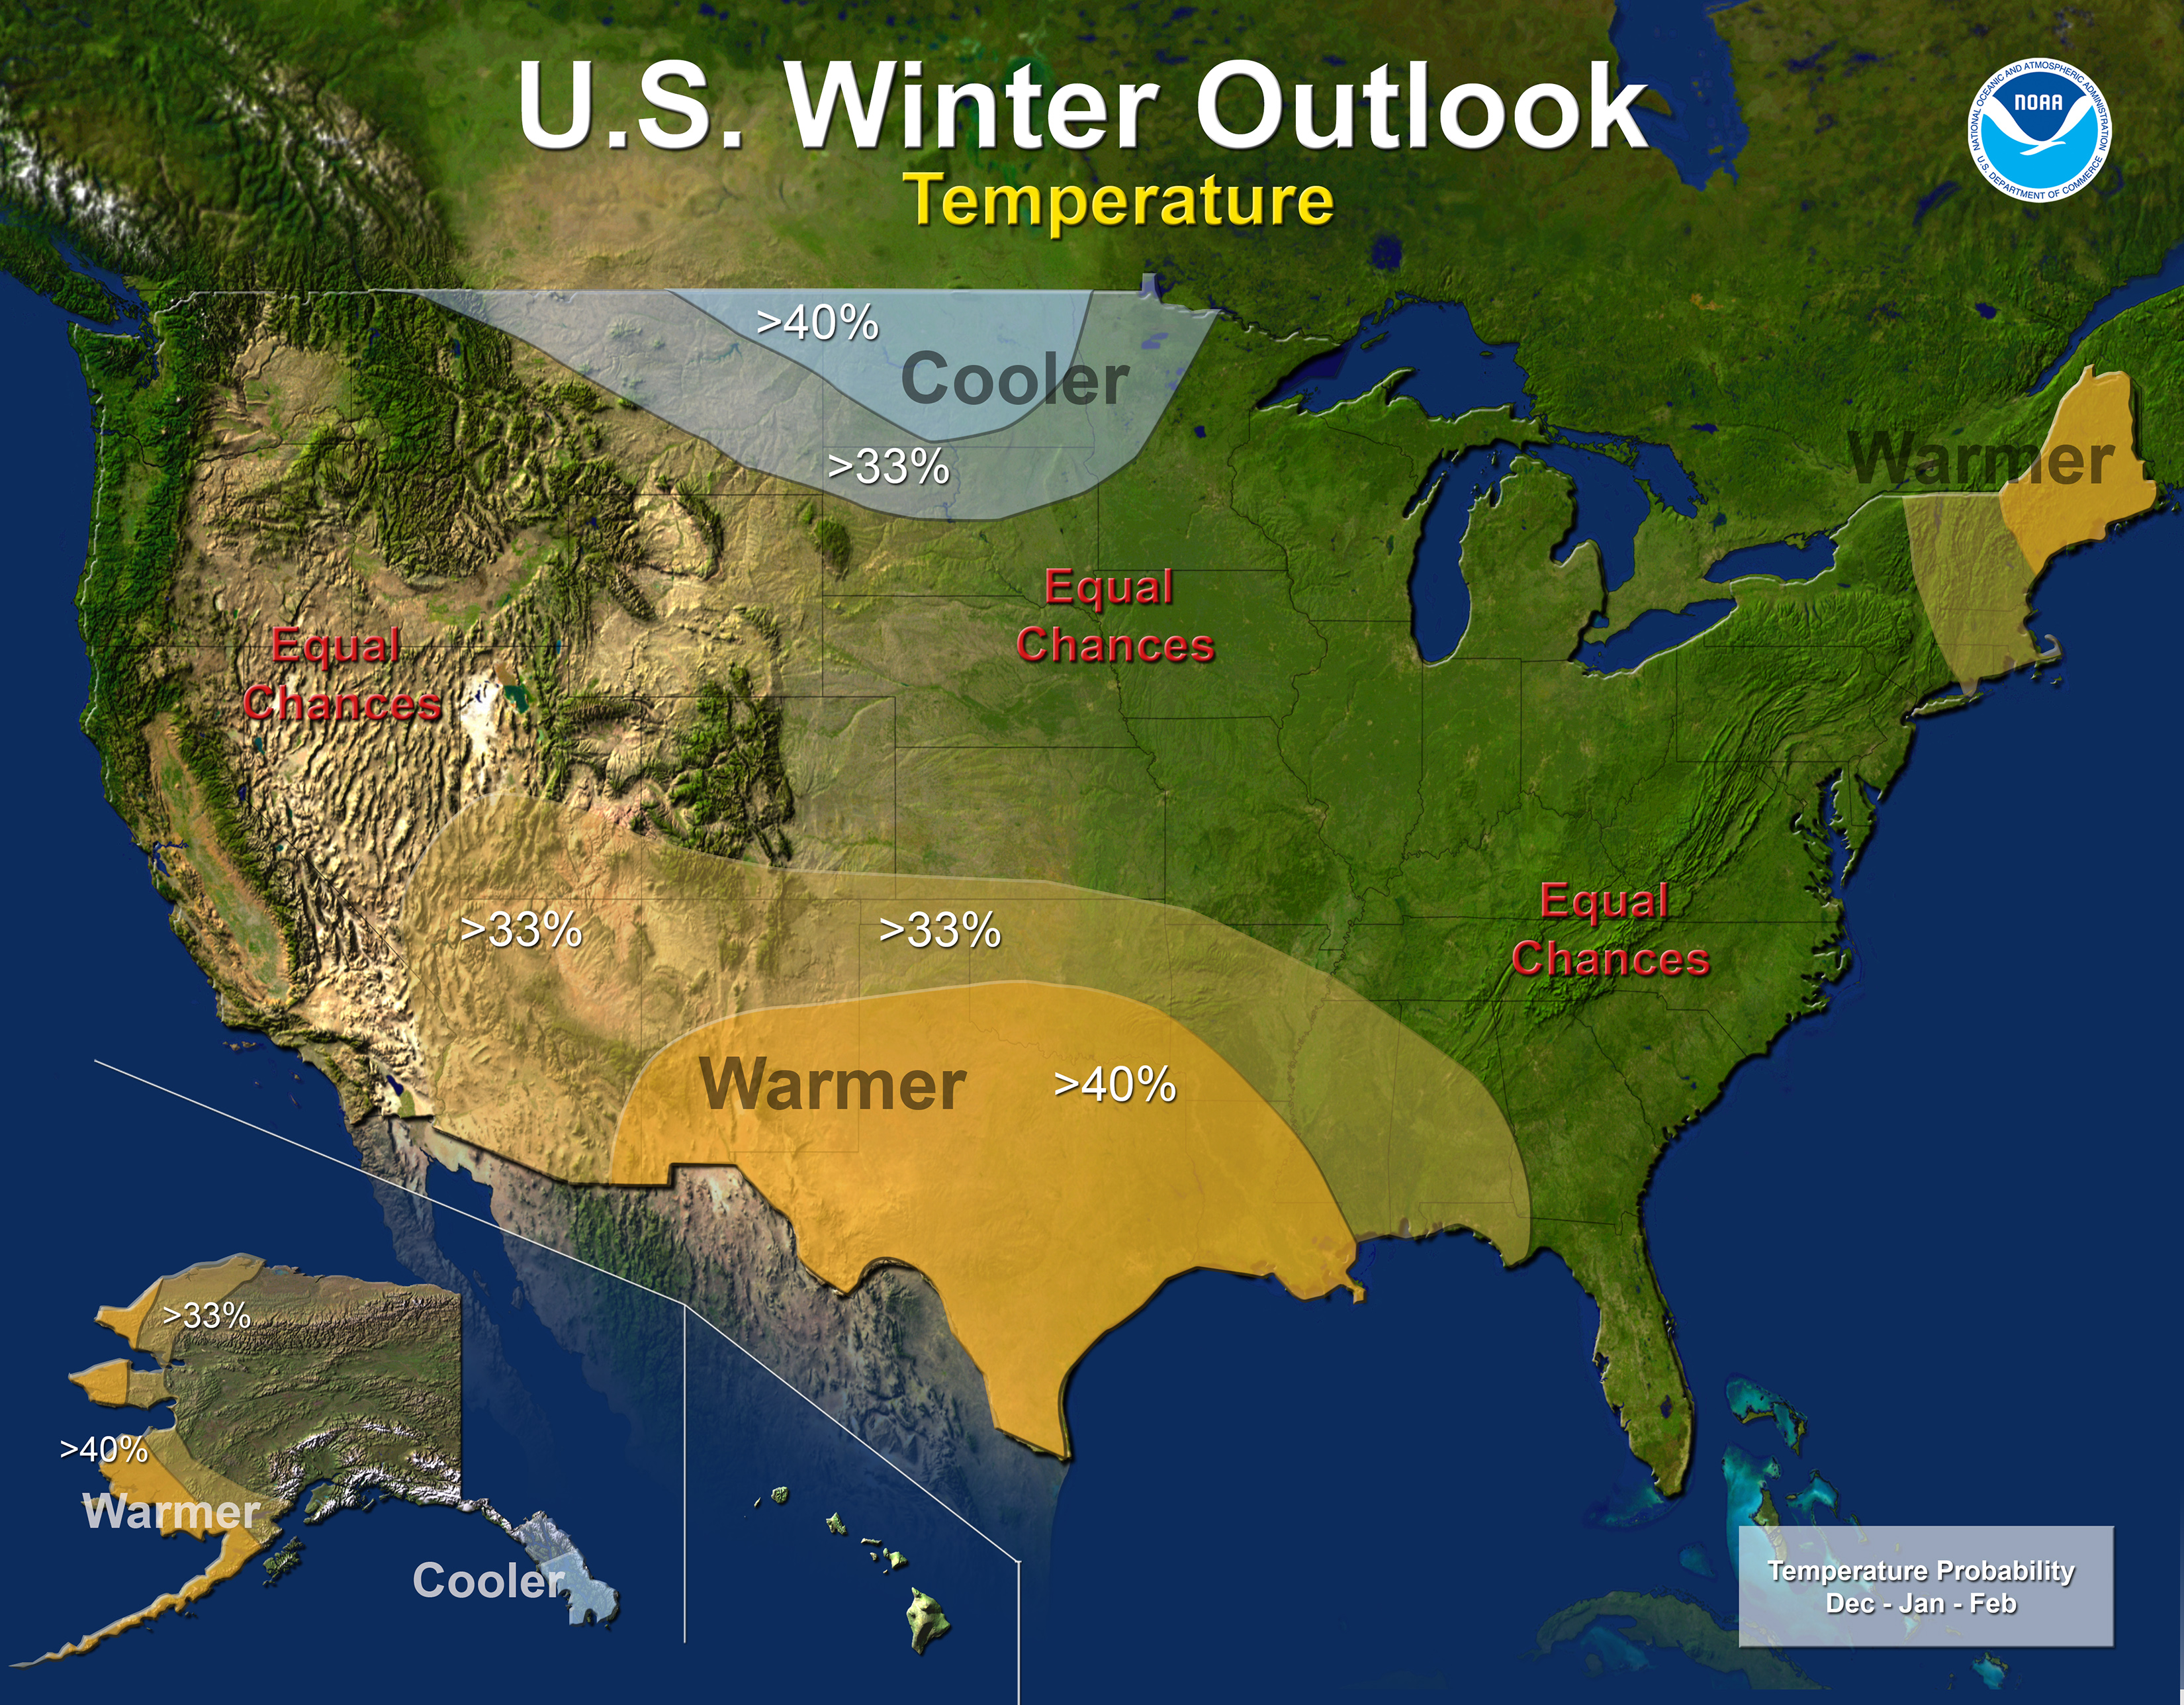 13-14 Winter Outlook Temp Map